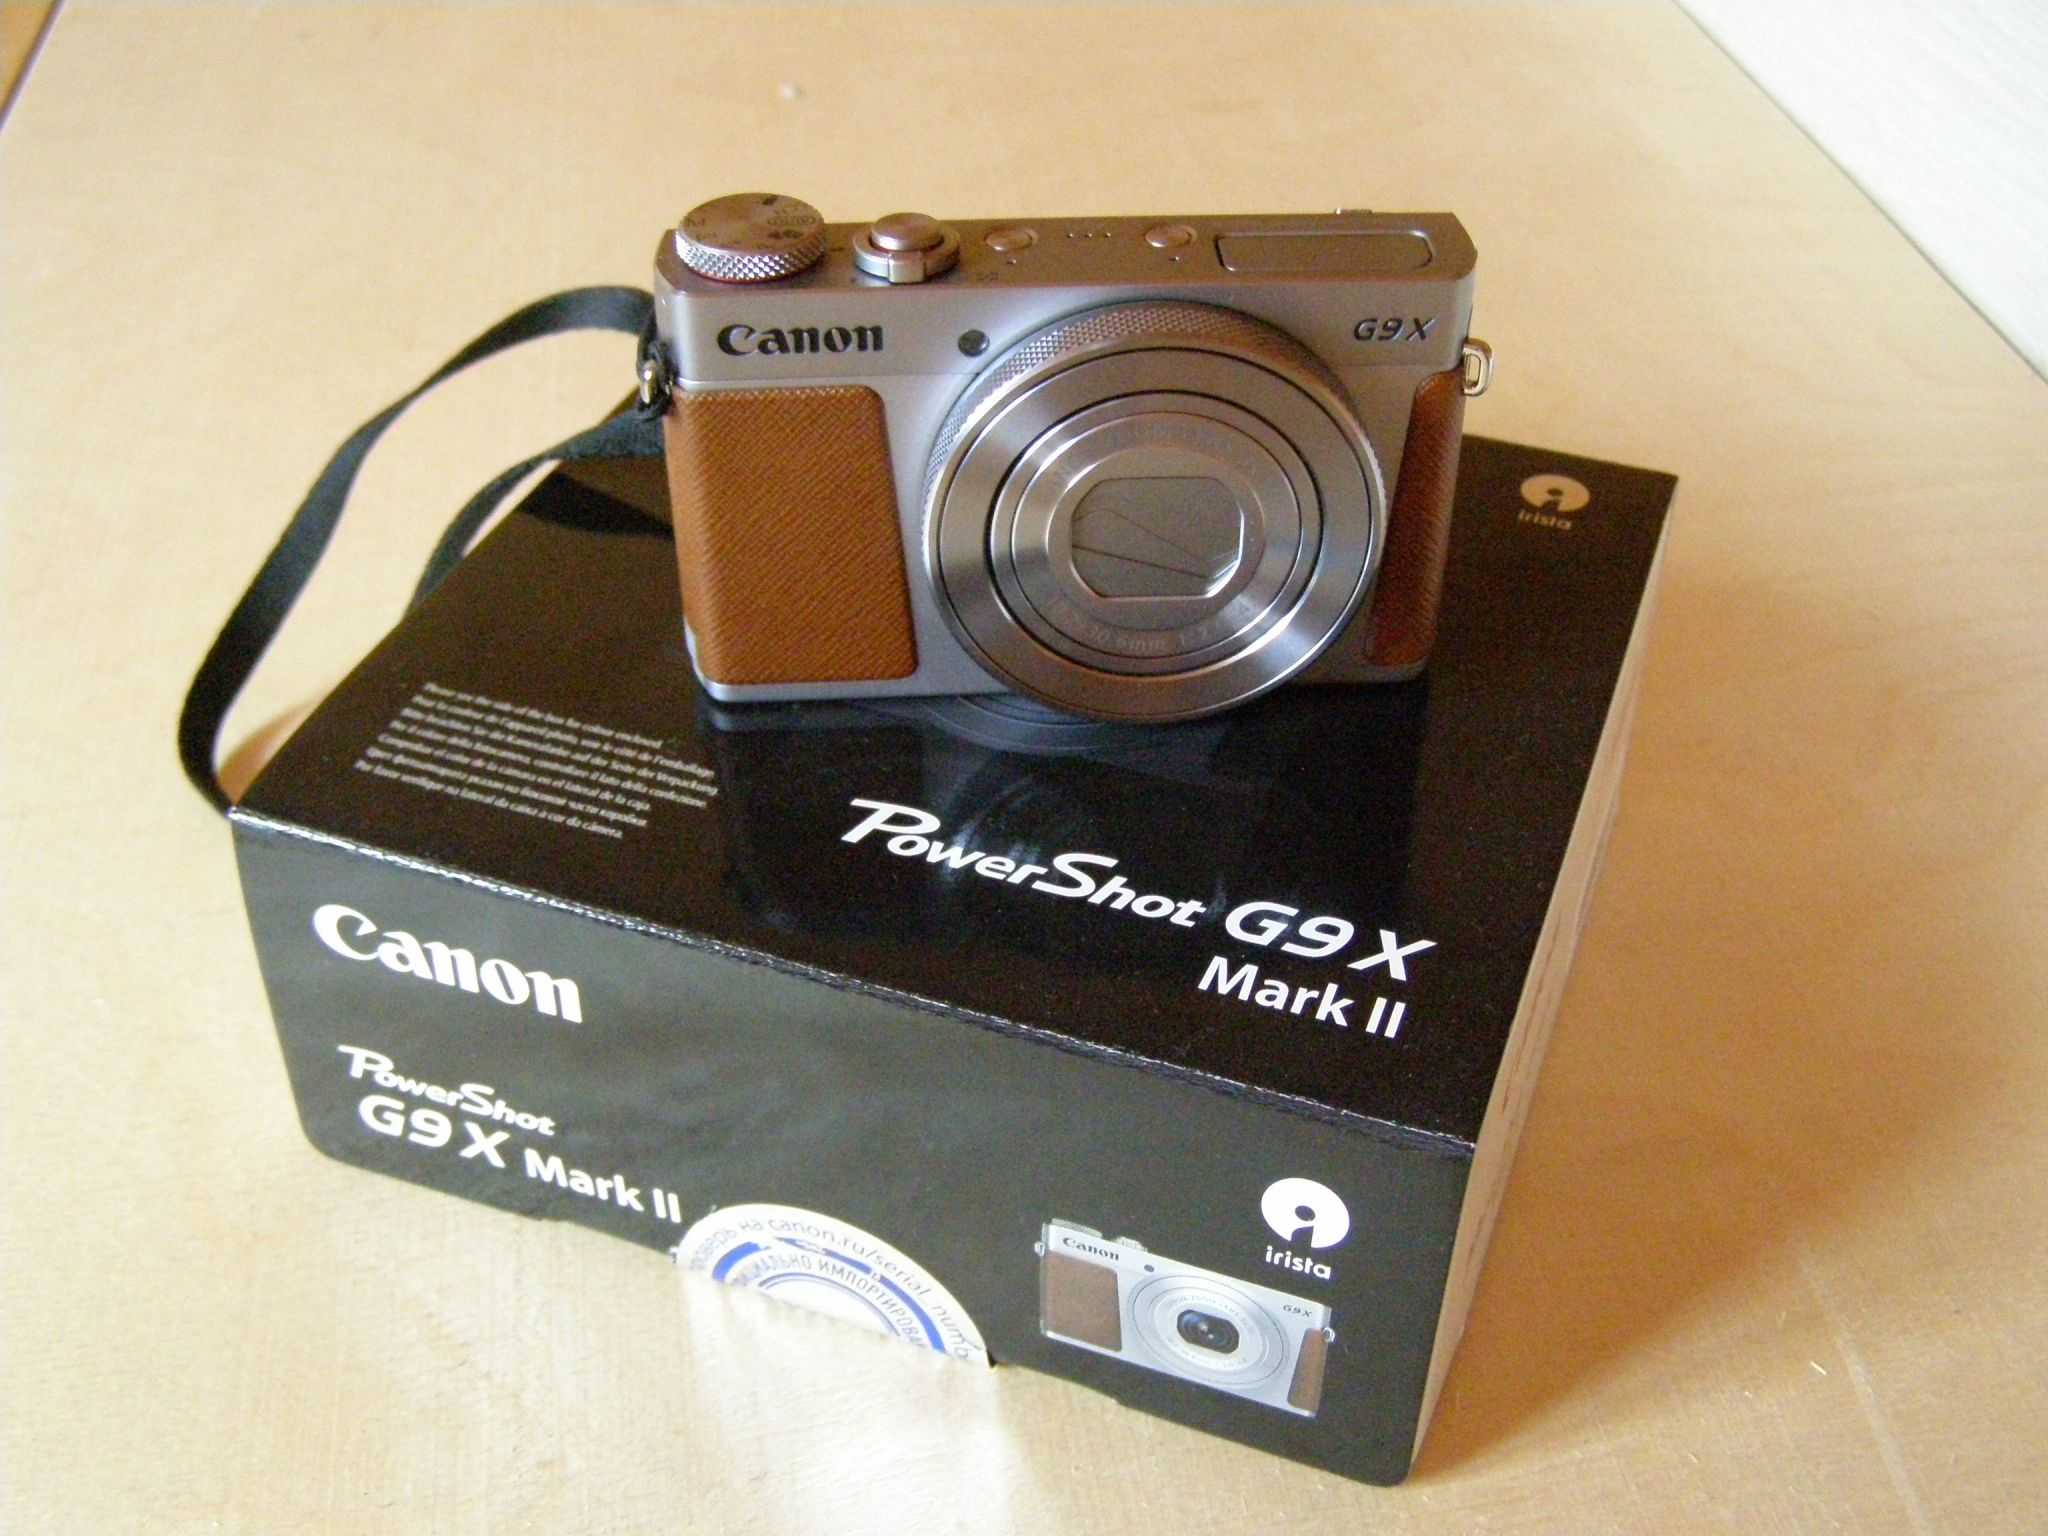 Canon powershot g9 x mark ii обзор и тест фотоаппарата — сравнение с другими моделями